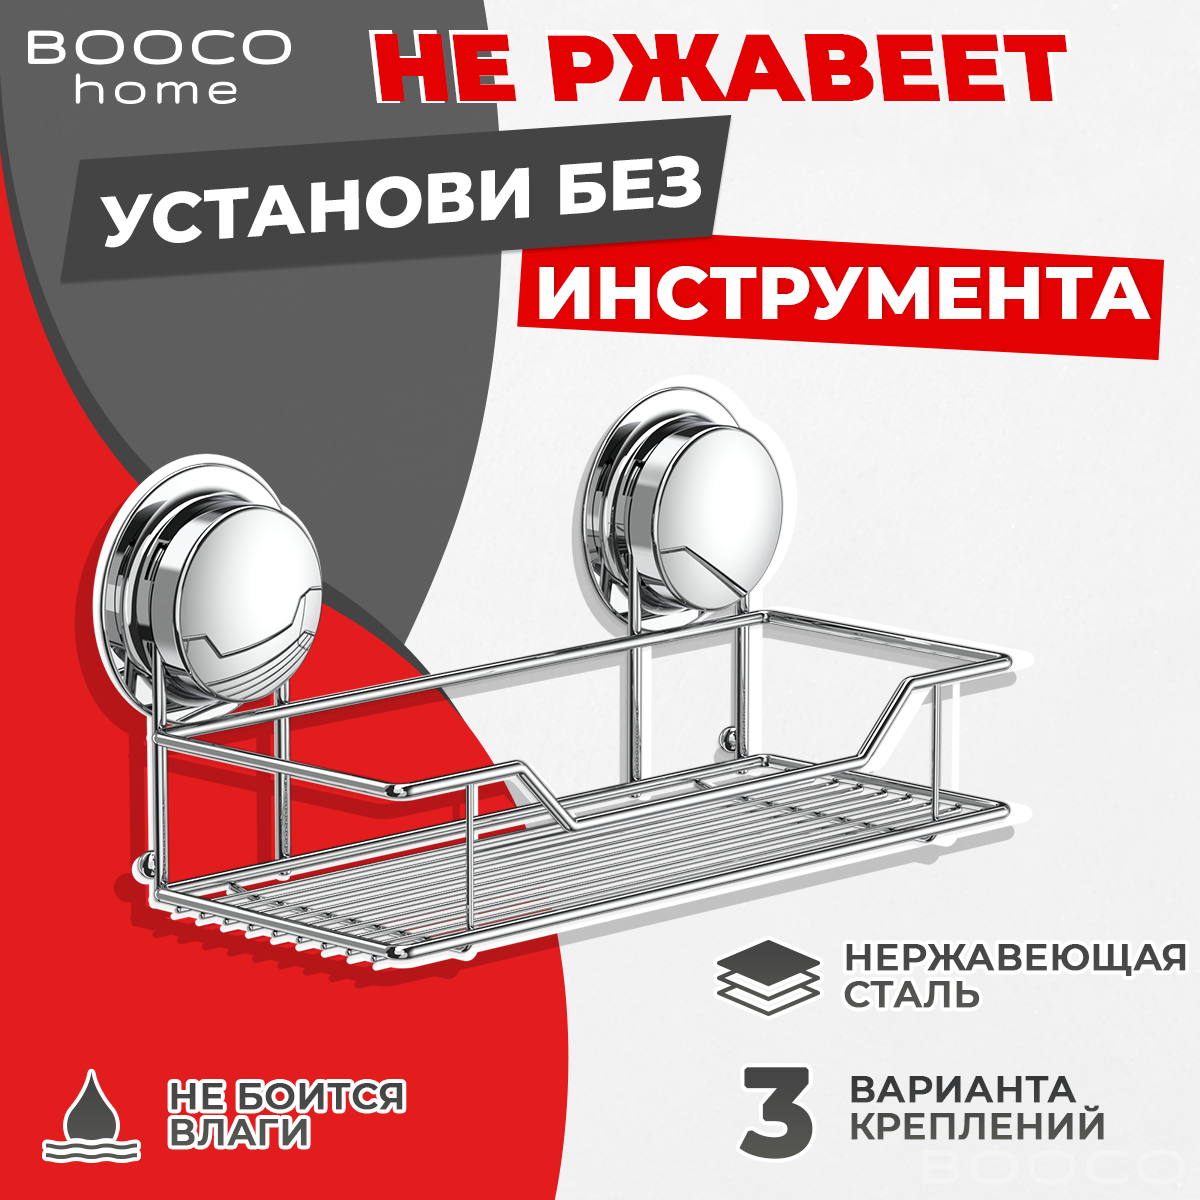 Полка для ванной комнаты корзина BOOCO - нержавеющая сталь хромированная - 1шт. Установка без инструмента